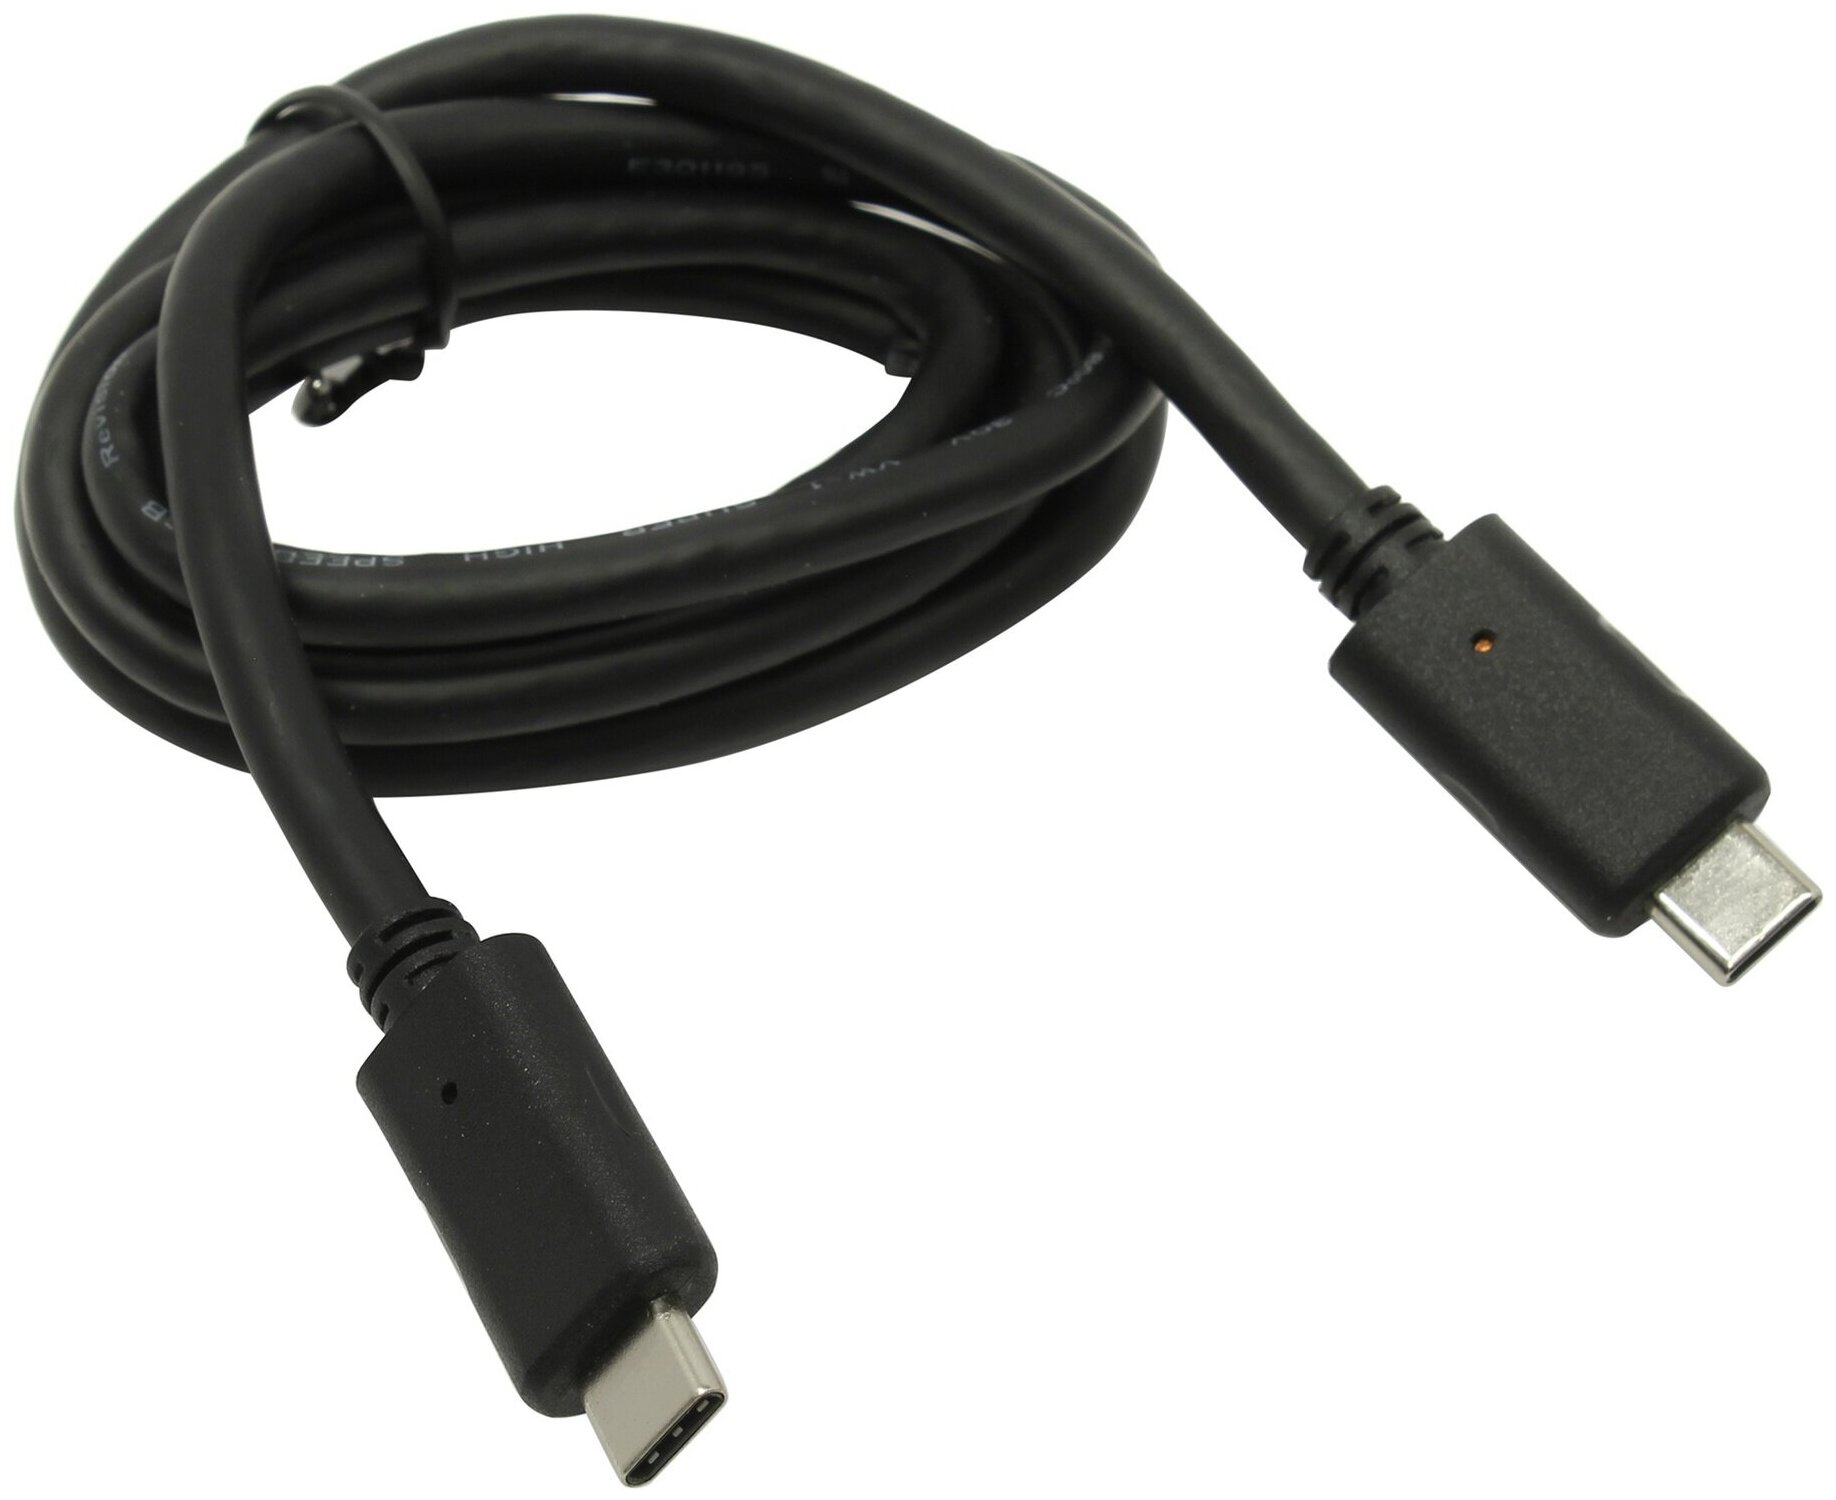 Кабель VCOM USB Type-С - USB Type-С (CU420)